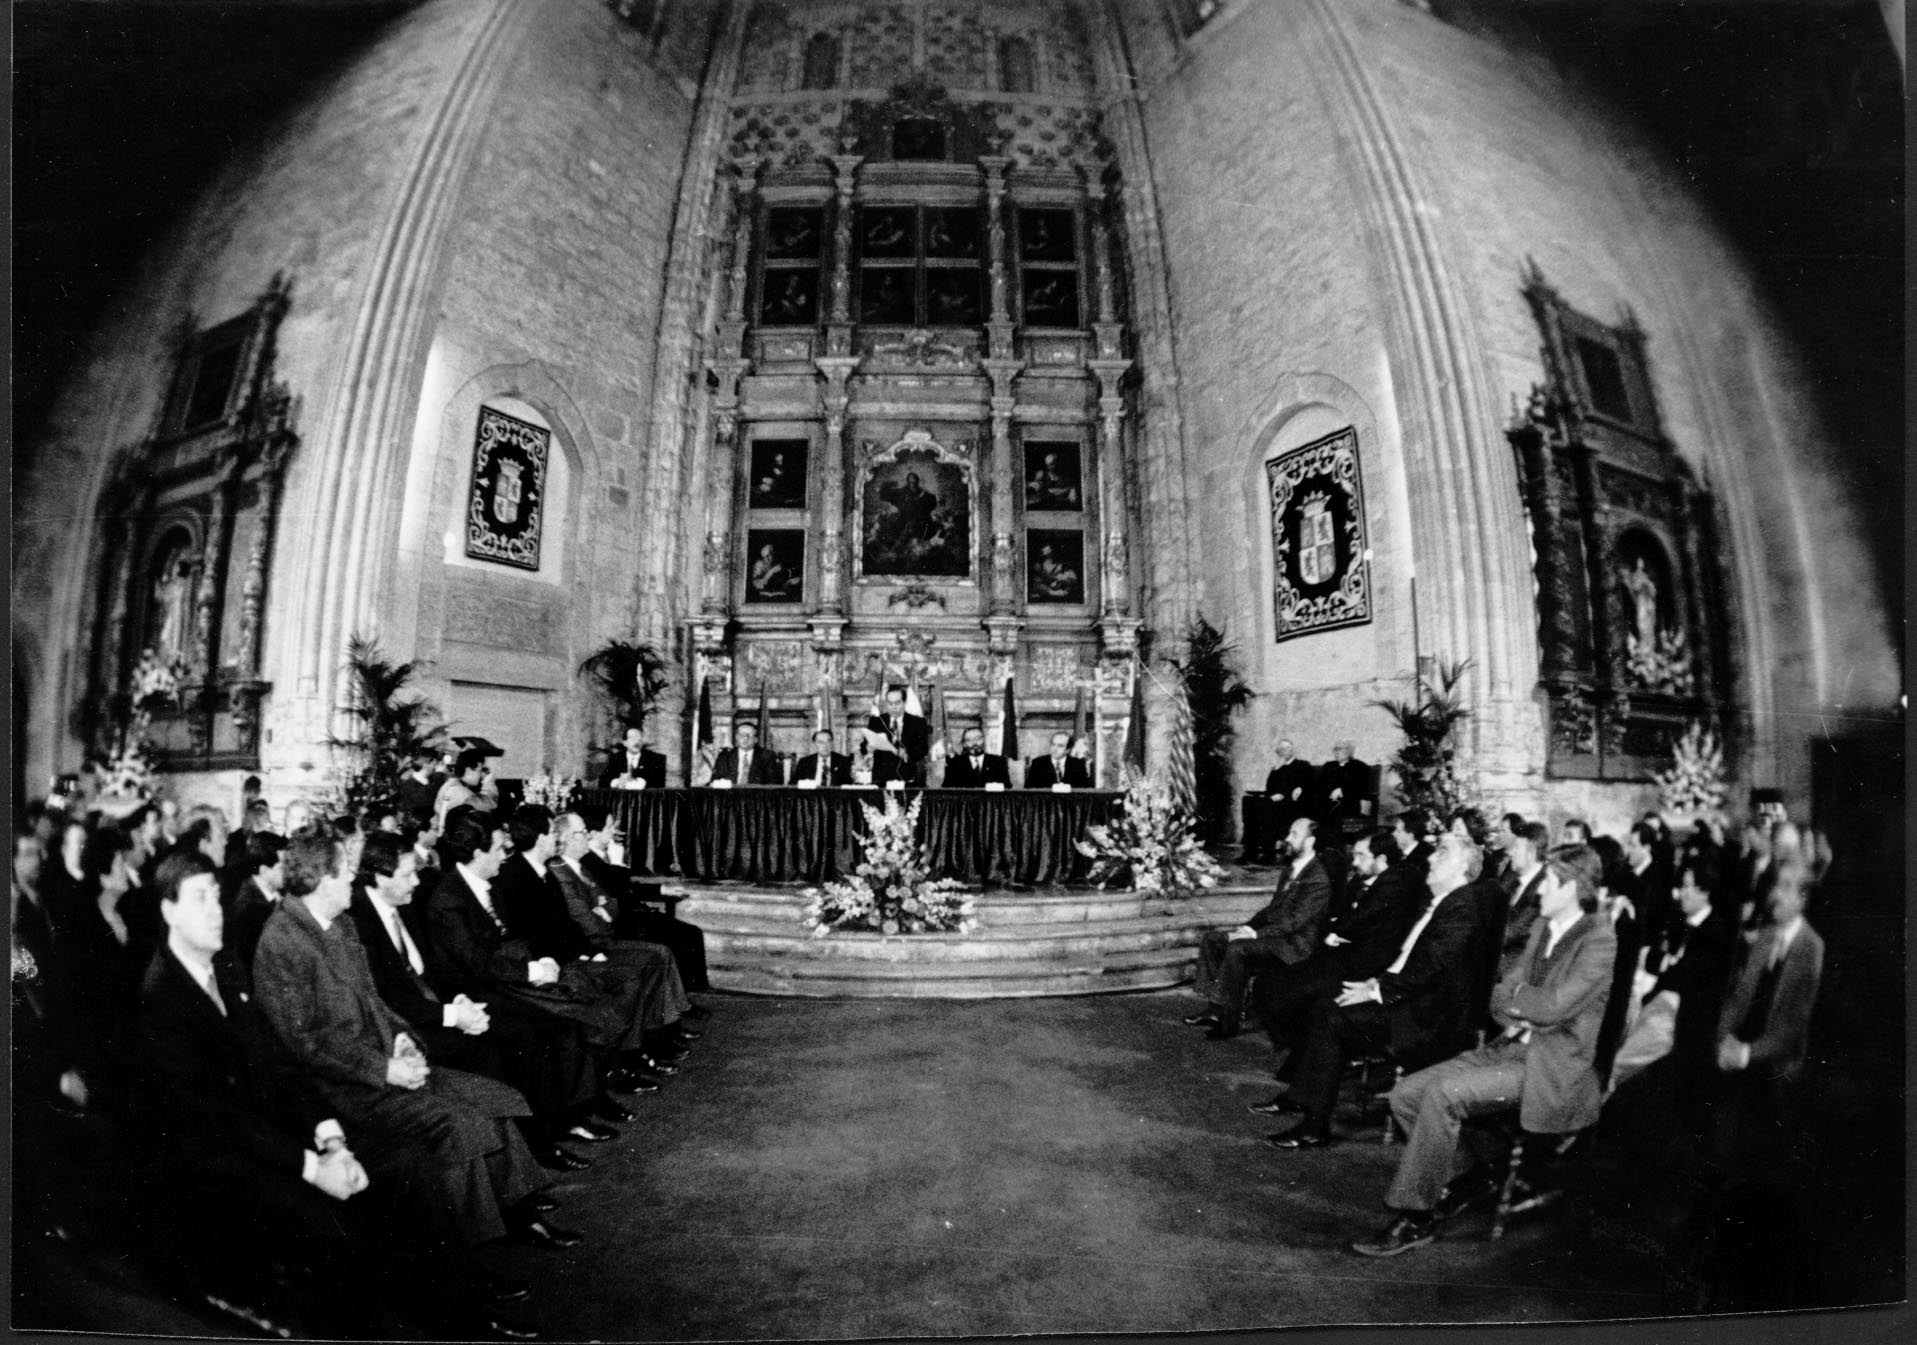 1992. El presidente de las Cortes, Manuel Estella, durante la lectura de su discurso en el IX aniversario, celebrado en la iglesia de San Marcos, en León.